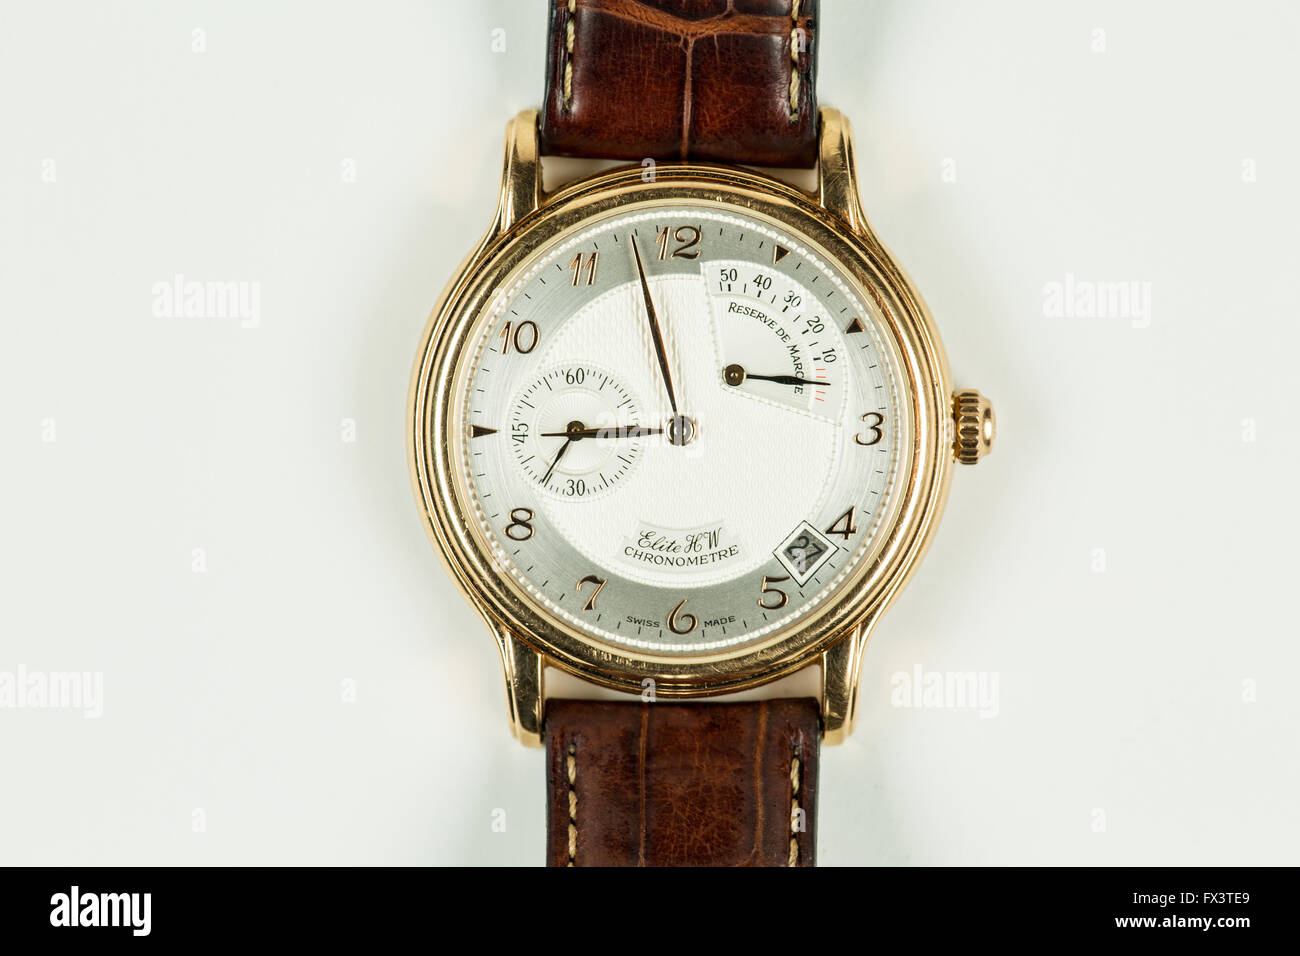 L'homme de luxe montre en or avec un chronomètre, date et secondes Banque D'Images